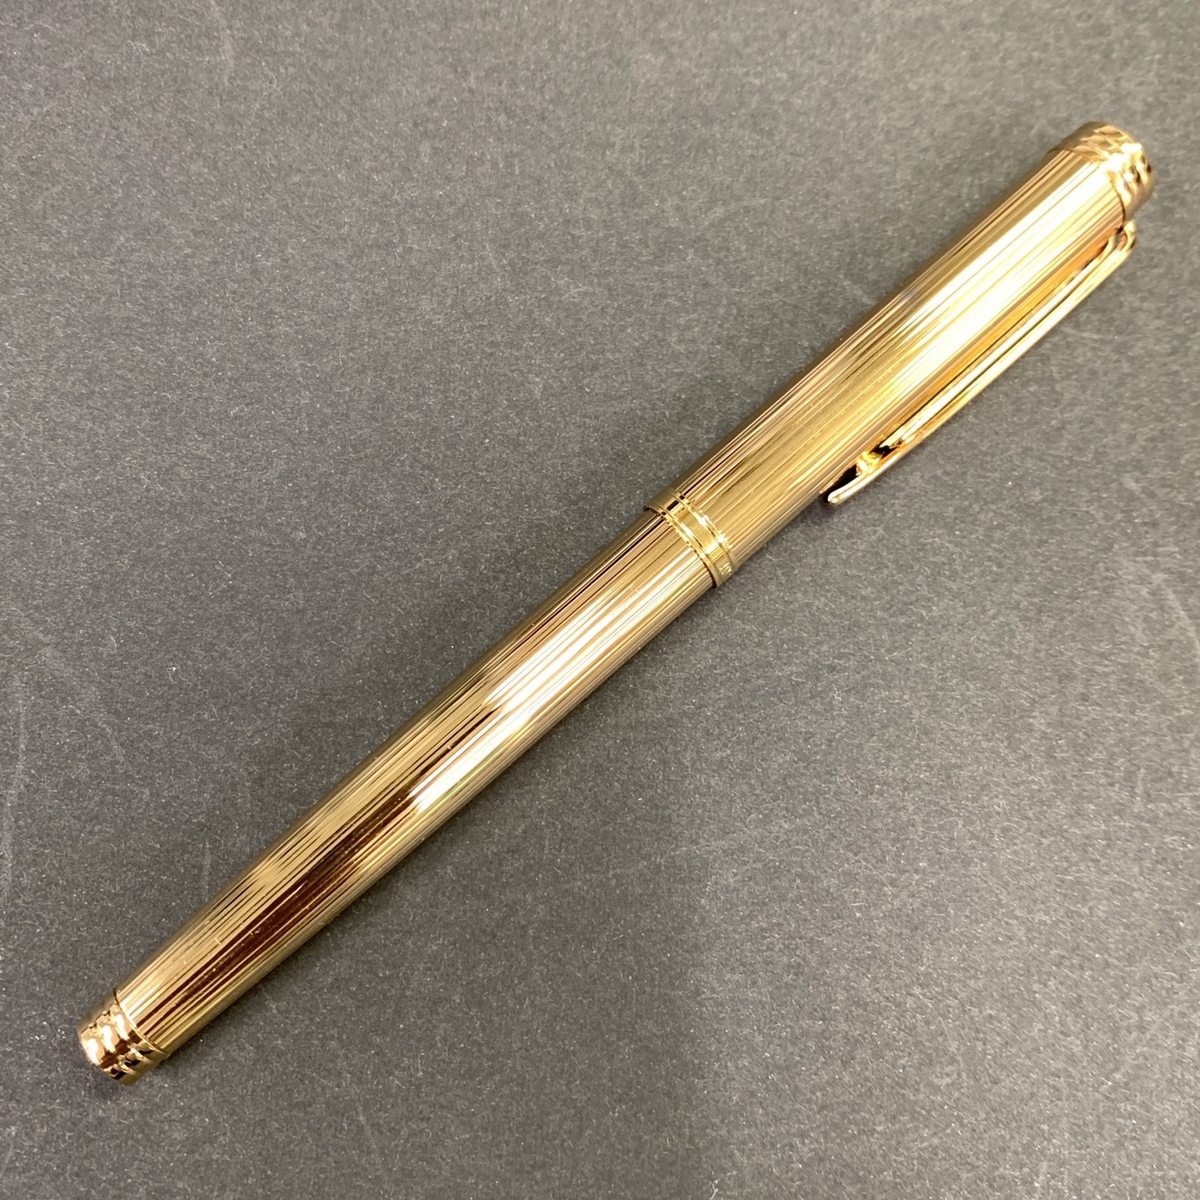 ウォーターマンのペン先 K18 ゴールド 万年筆の買取実績です。